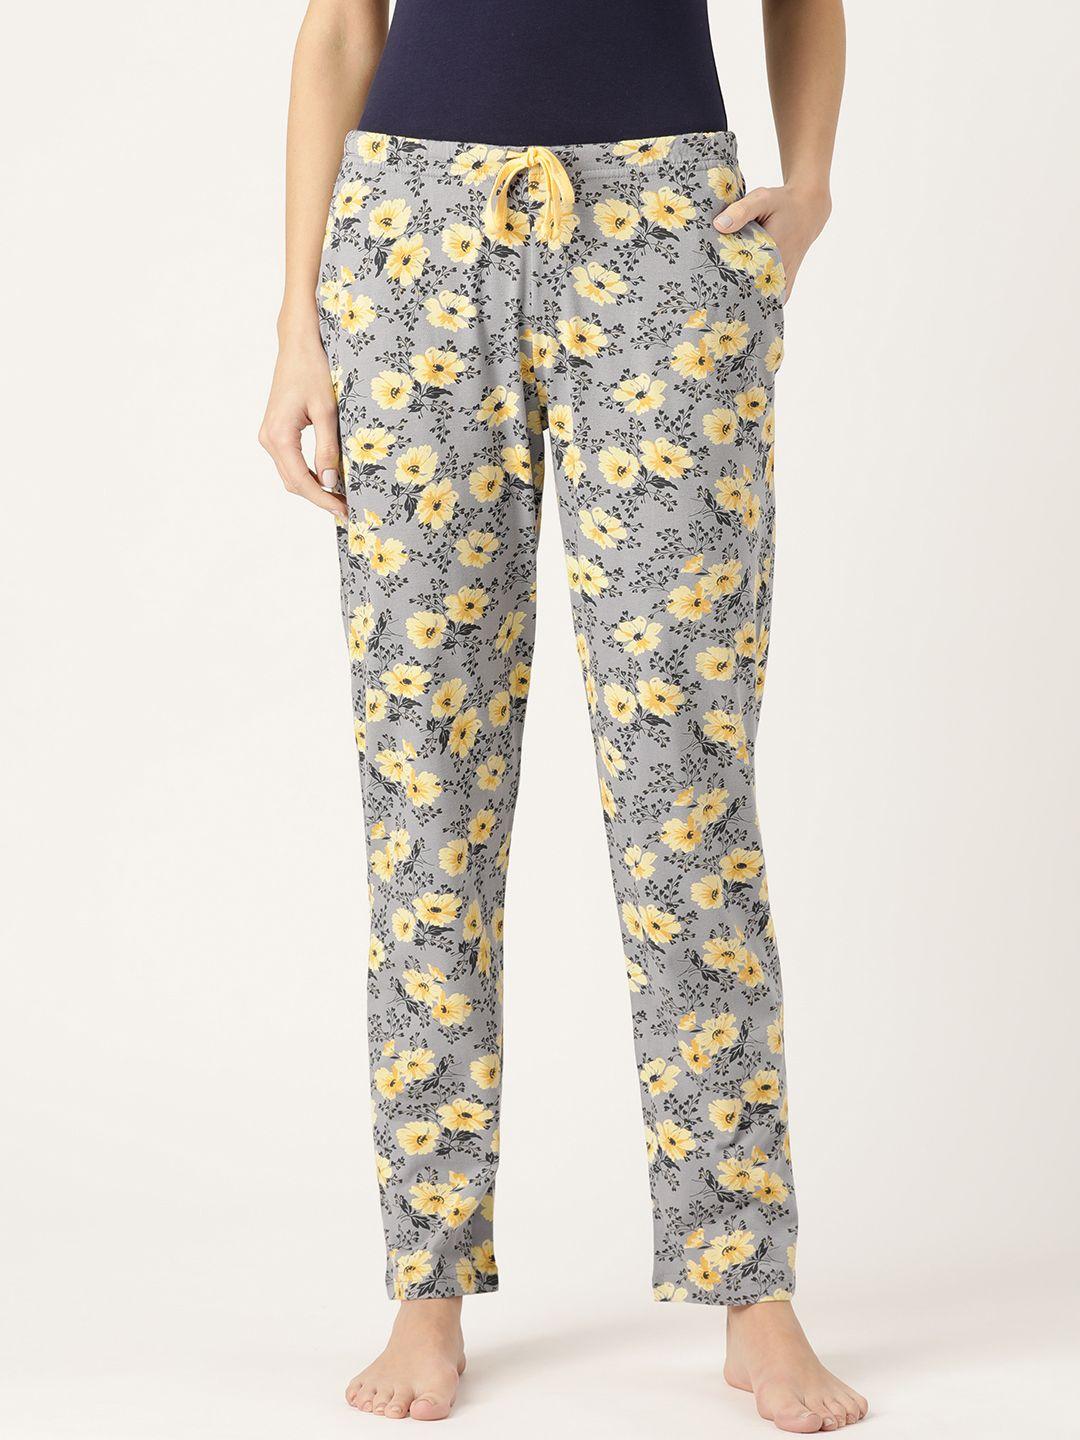 kanvin women lime grey & yellow floral print lounge pants